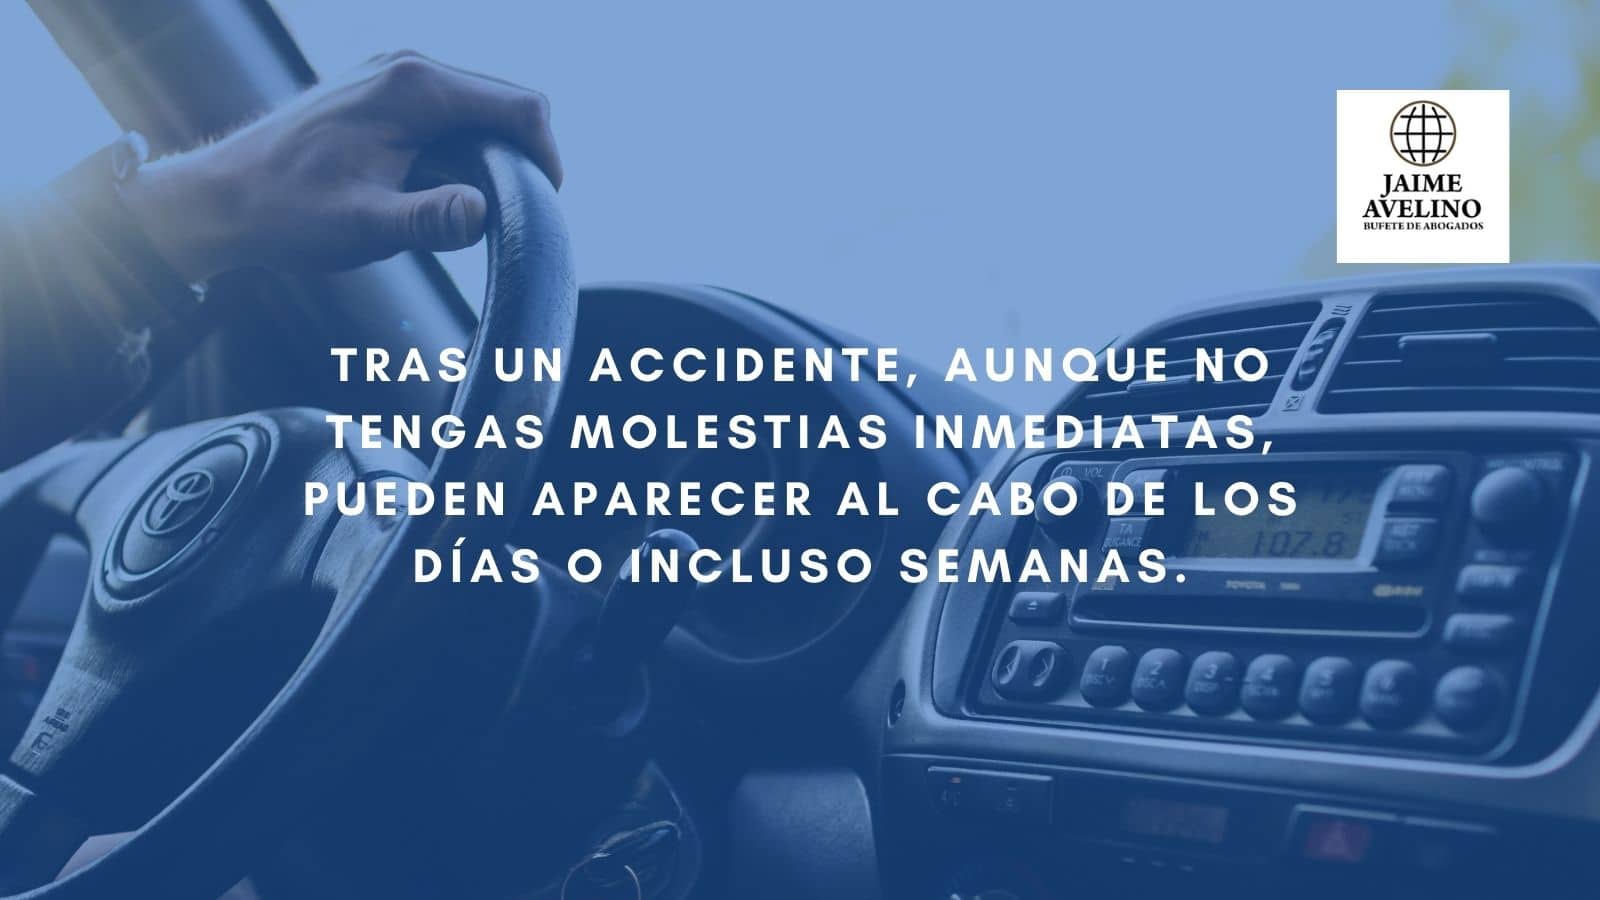 Tras un accidente, aunque no tengas molestias inmediatas, pueden aparecer al cabo de los días o incluso semanas.